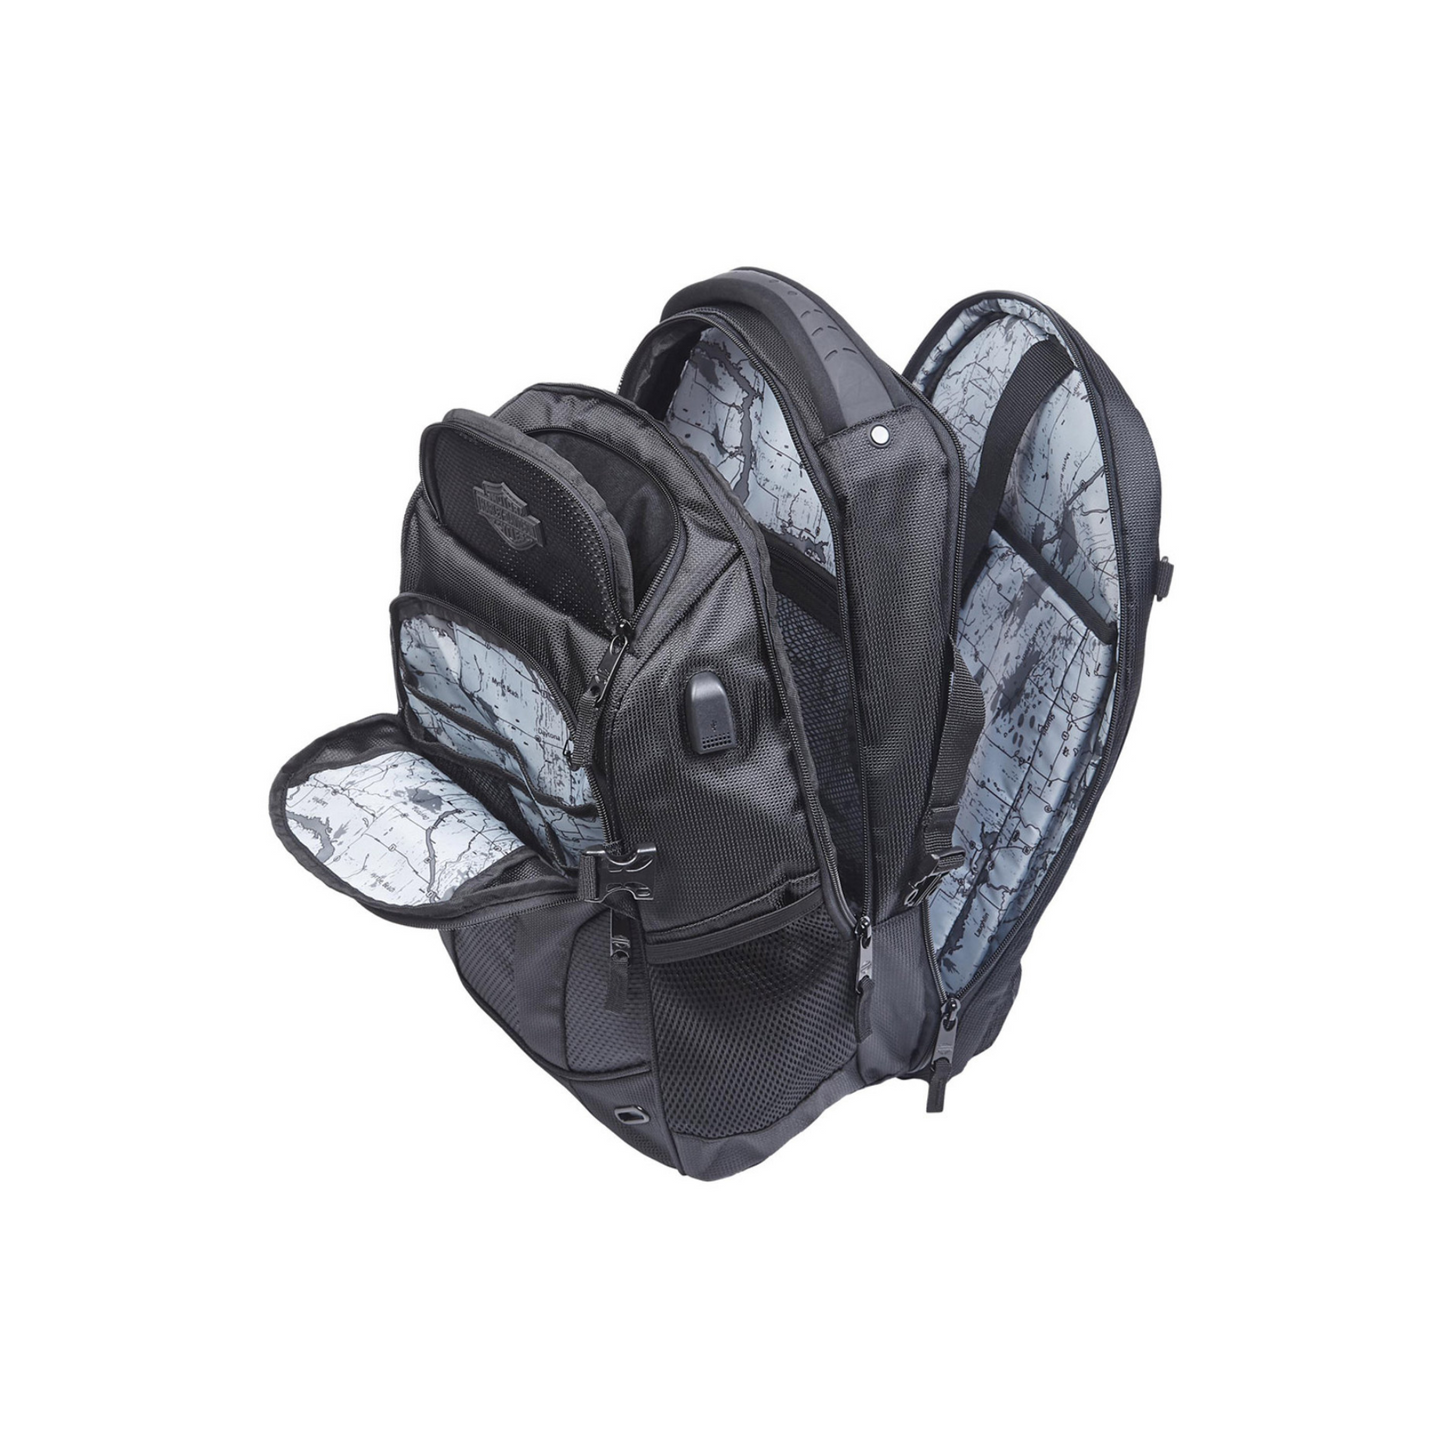 Harley-Davidson® Renegade II Hi-Tech External USB Port Backpack - Black